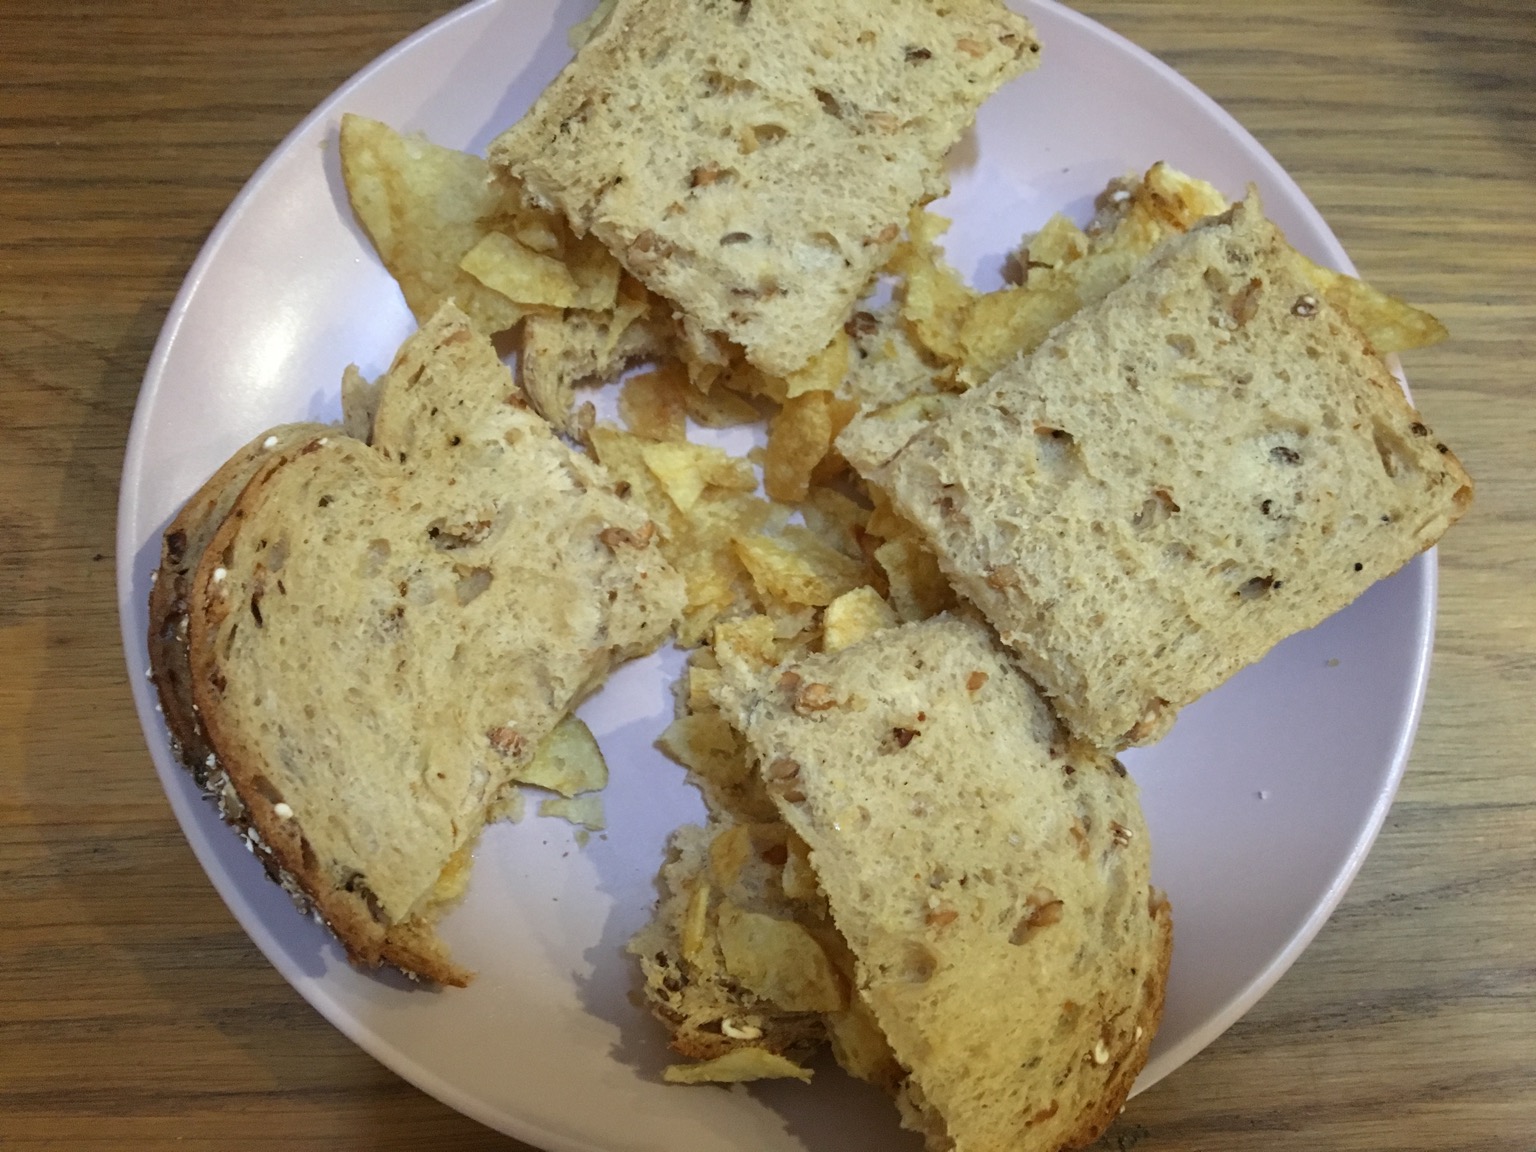 Brown crisp sandwich cut into quarters